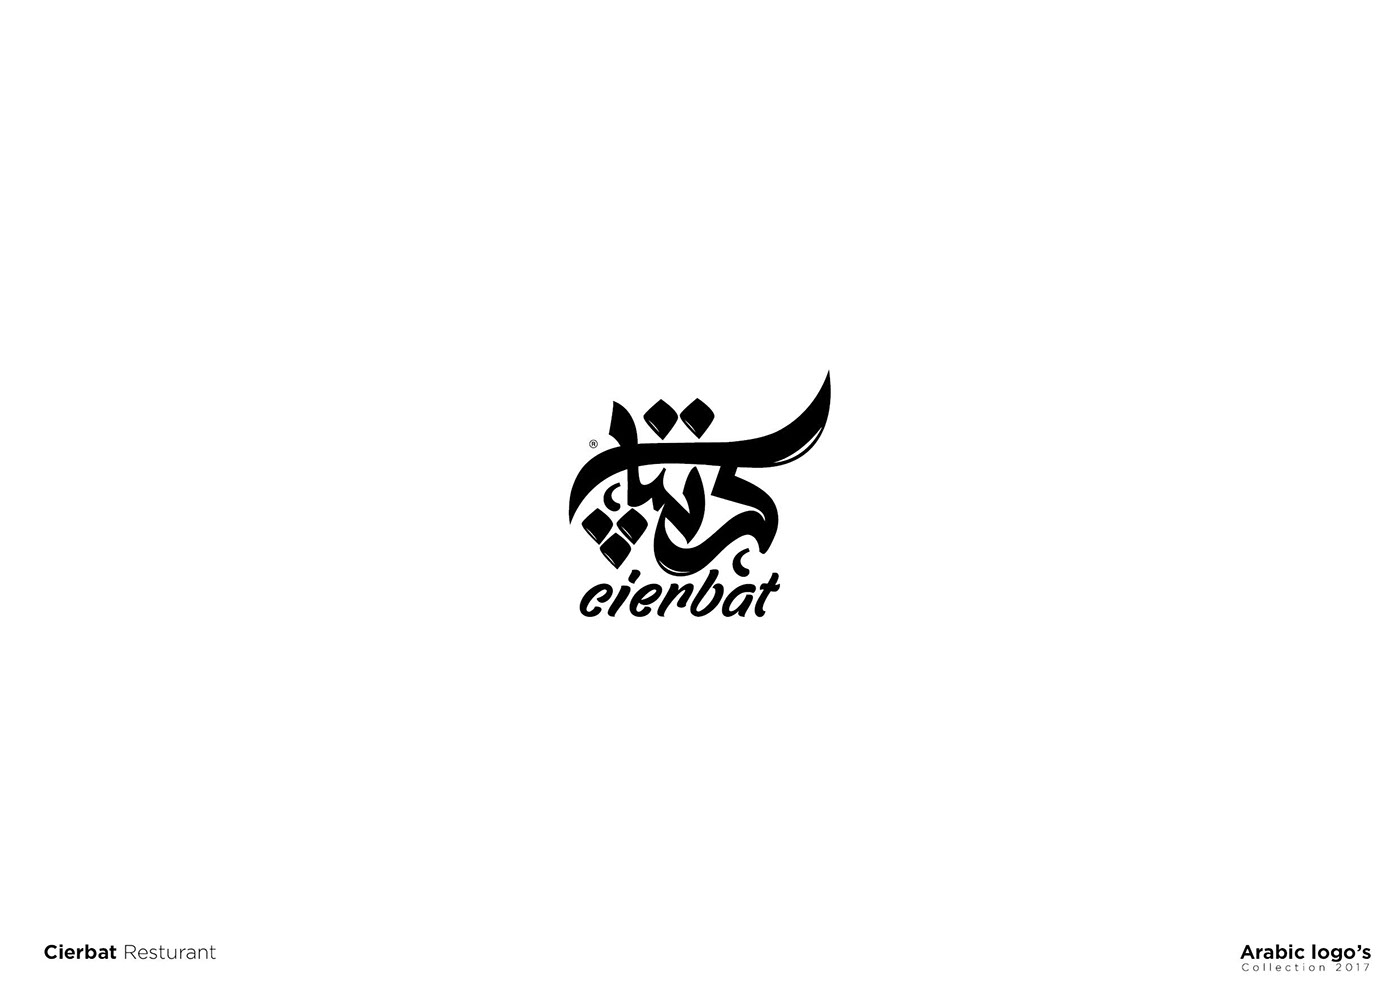 typography   Calligraphy   logo شعارات براندينج arabic_design